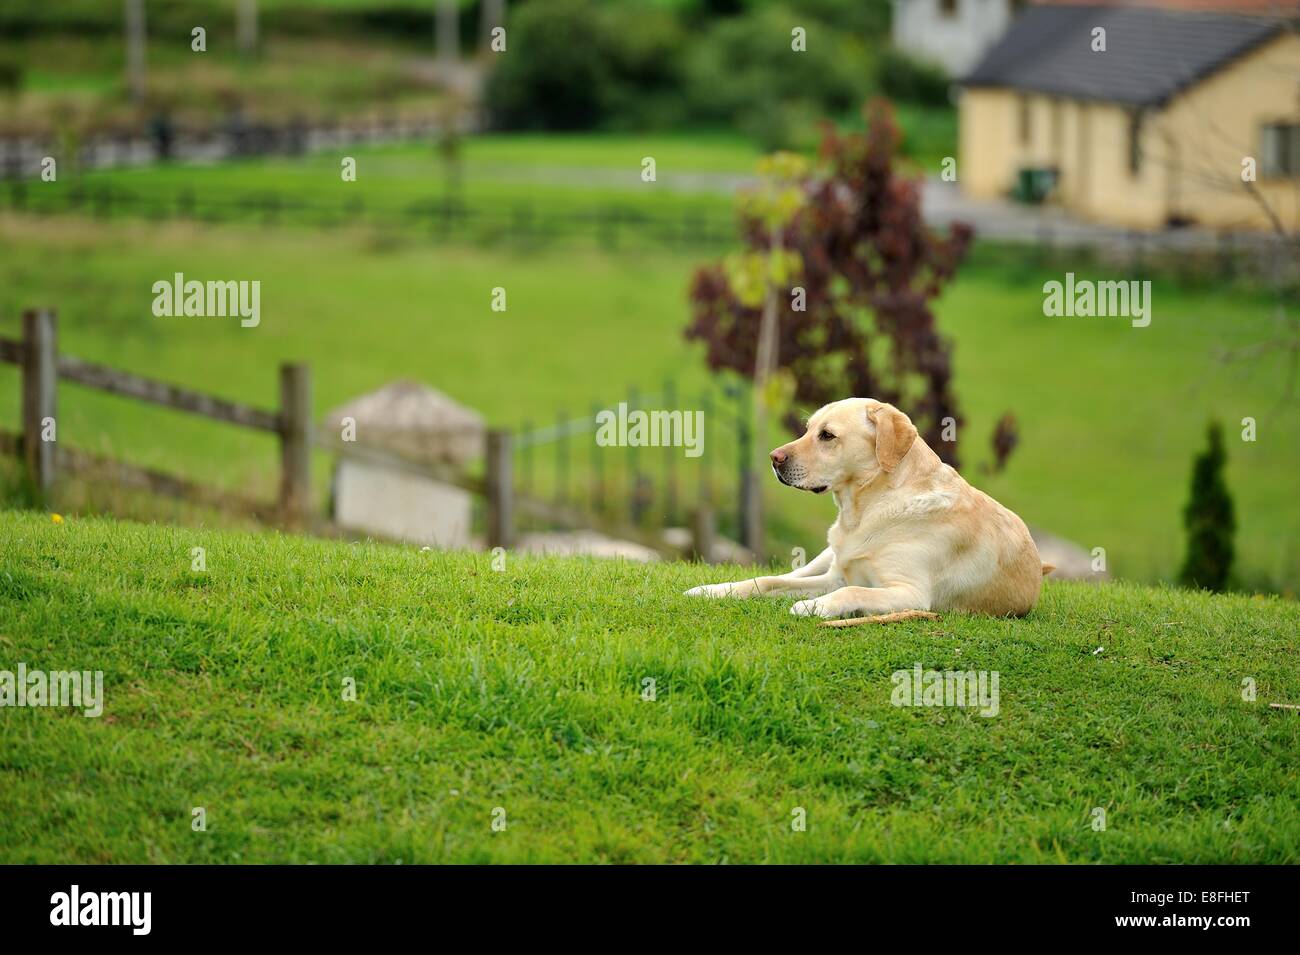 Labrador Retriever dog lying on grass in a garden Stock Photo